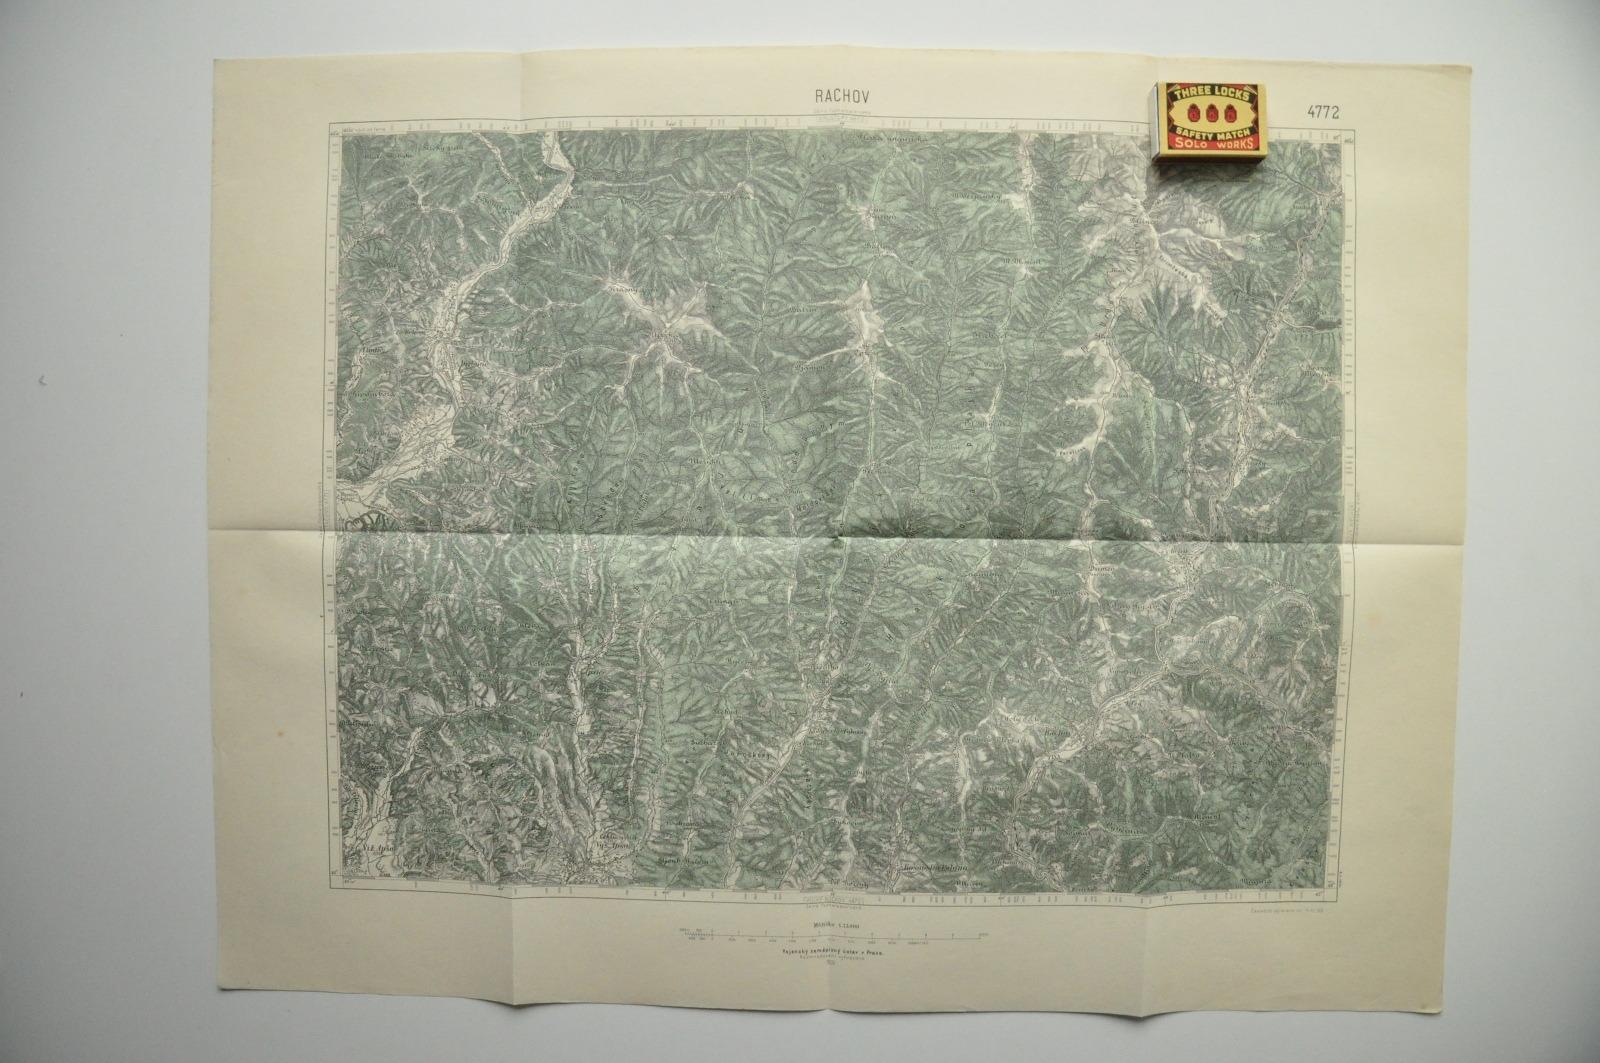 RACHOV - PODKARPATSKÁ RUS - VOJENSKÁ ŠPECIÁLNA MAPA - 1934 - Staré mapy a veduty